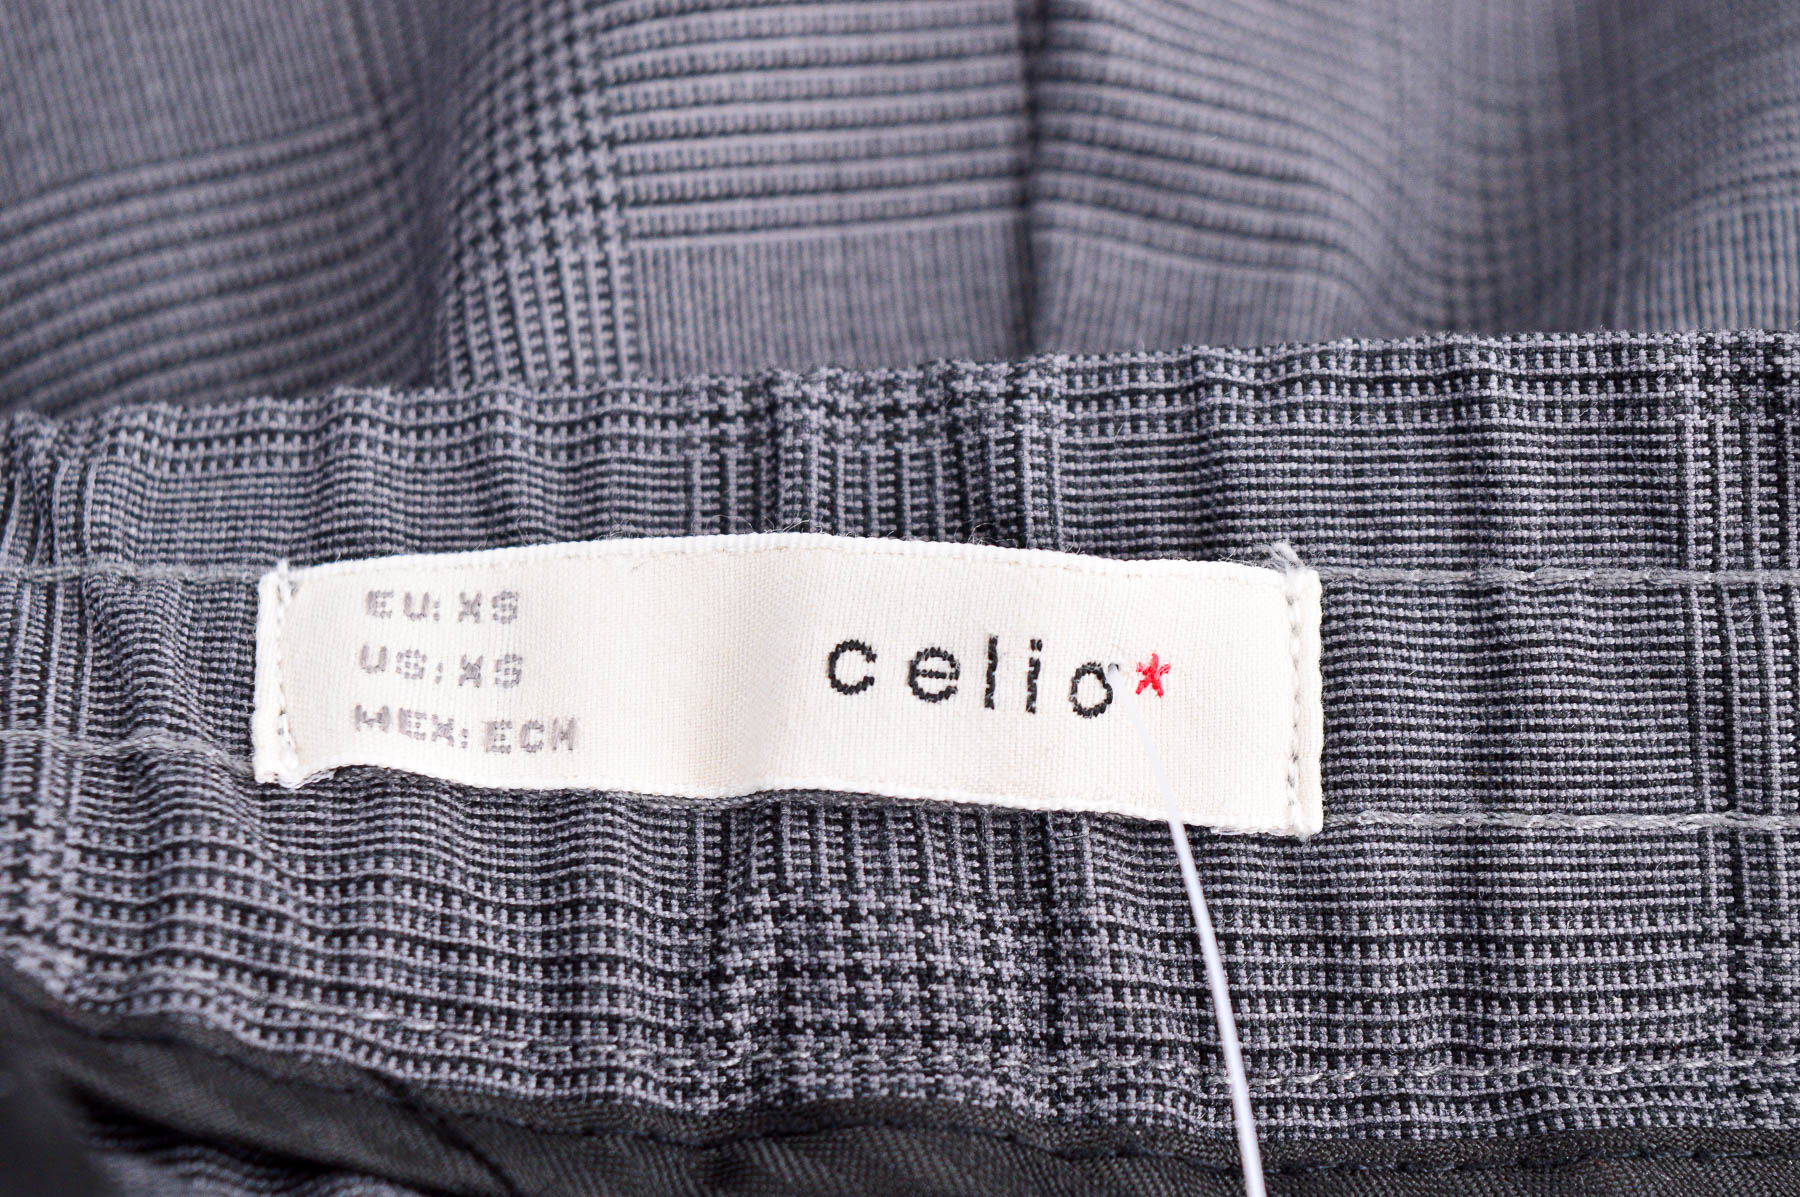 Мъжки панталон - Celio* - 2